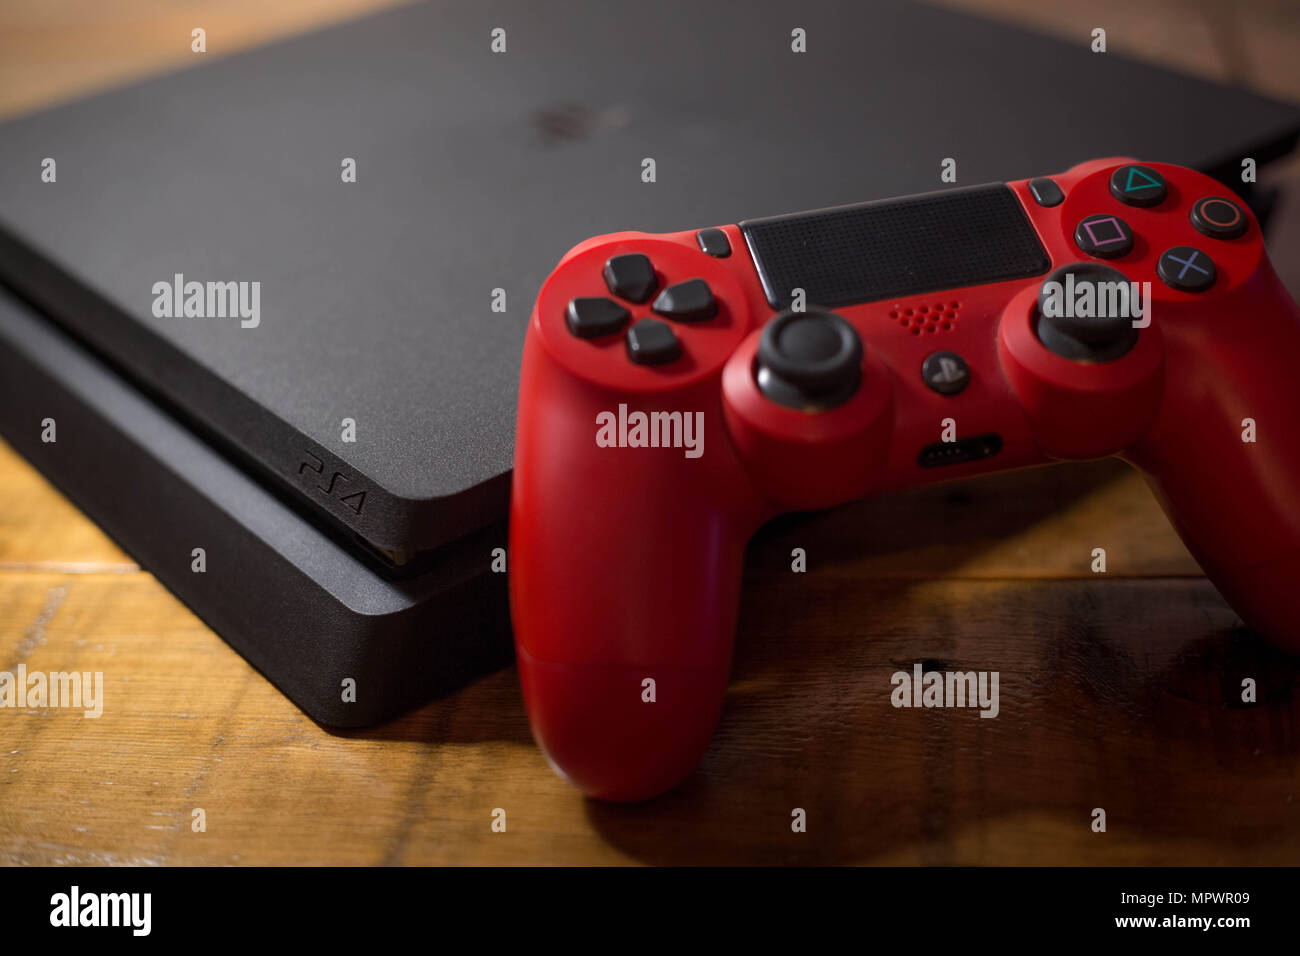 Una Sony PlayStation 4 consola de videojuegos con un controlador inalámbrico rojo junto a ella. La PlayStation 4 o PS4 se conoce como inicio de octava de consola de video